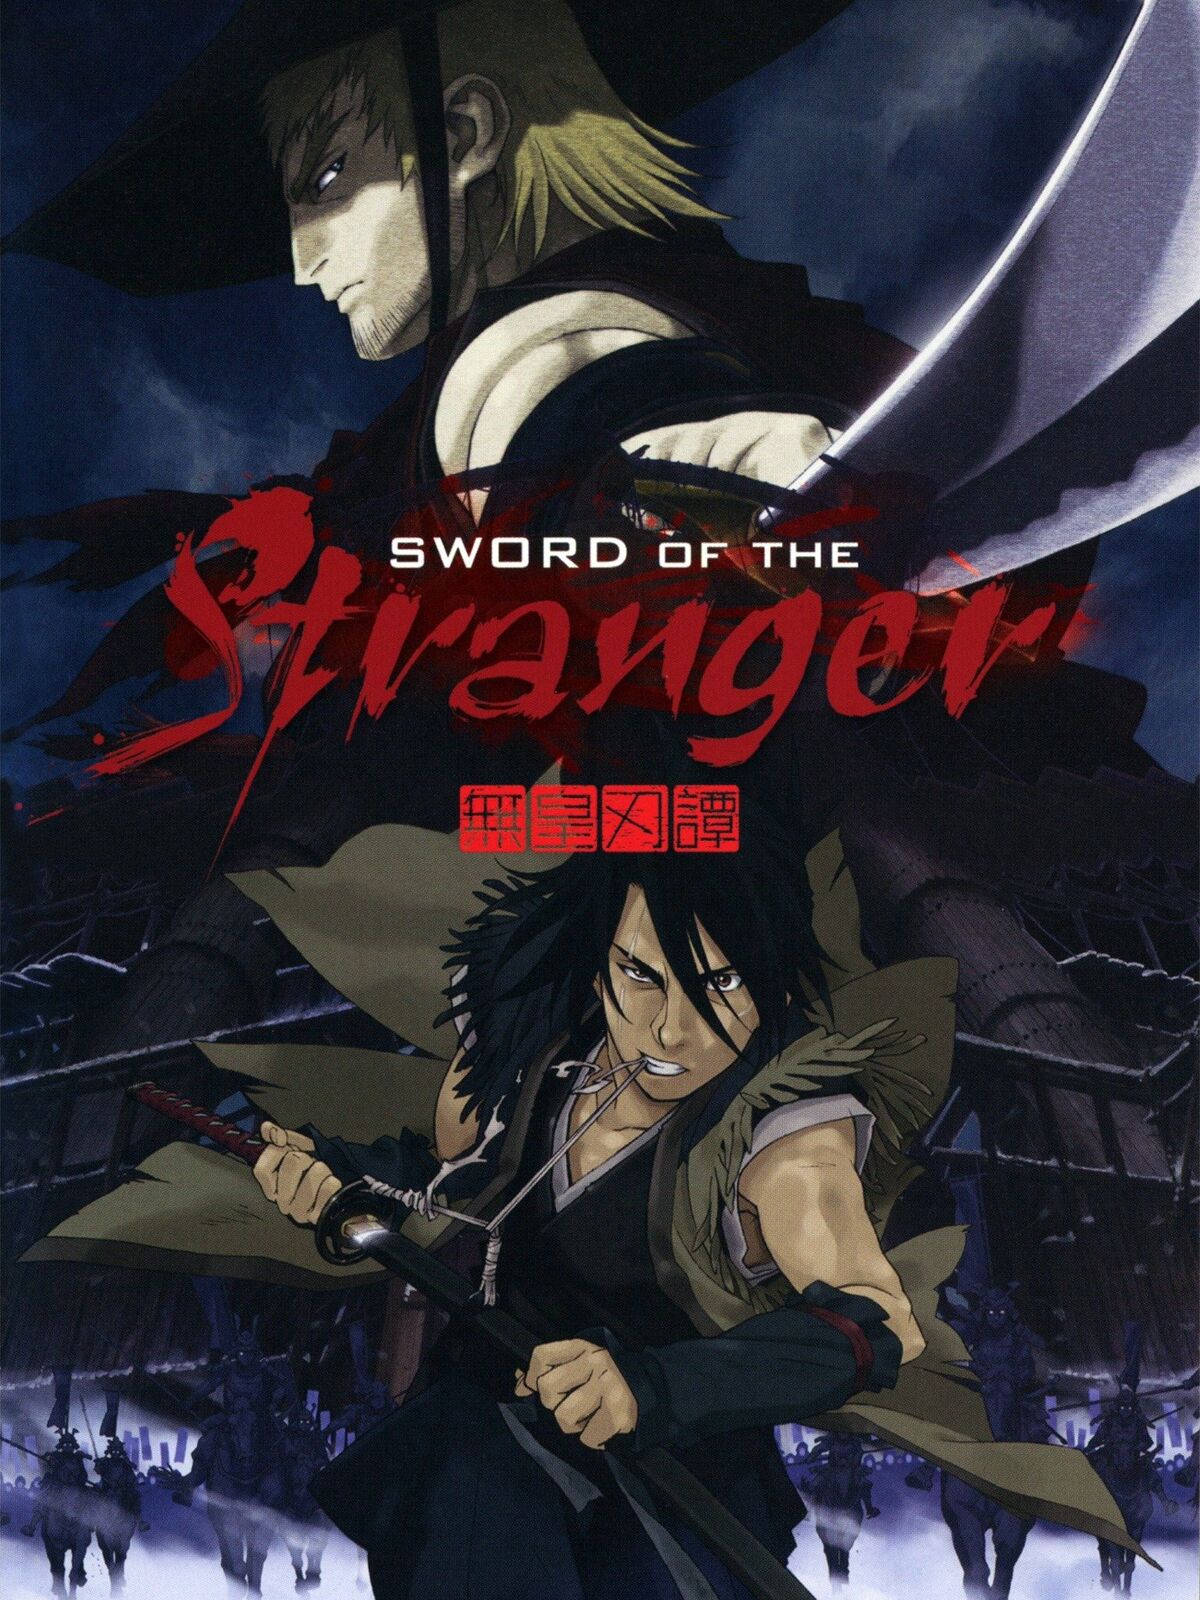 Sword of the Stranger – Review